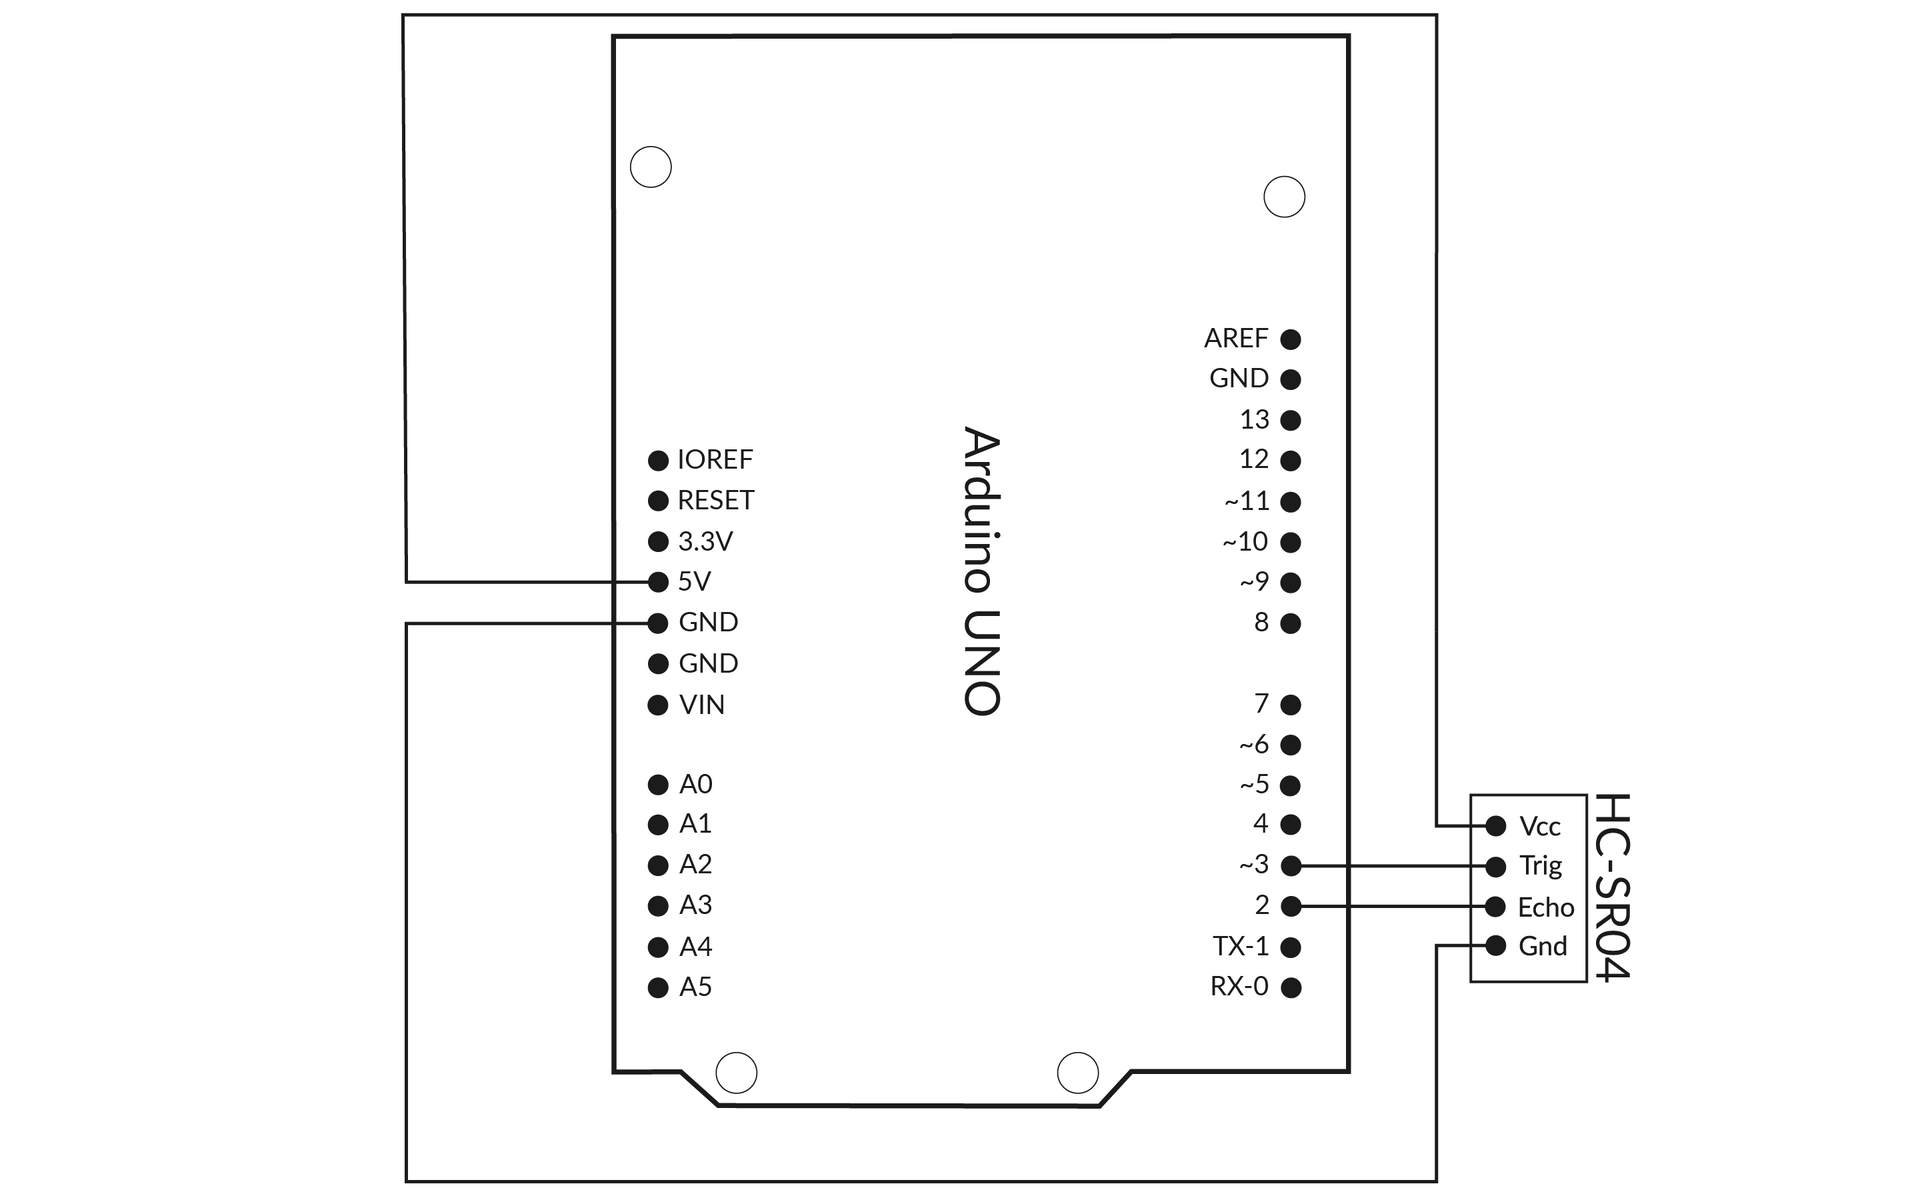 Ilustracja przedstawia połączenie pomiędzy arduino uno a sensorem. Połączenia (od sensora do arduino): Vcc do 5V, Trig do ~3, Echo do 2, Gnd do GND.